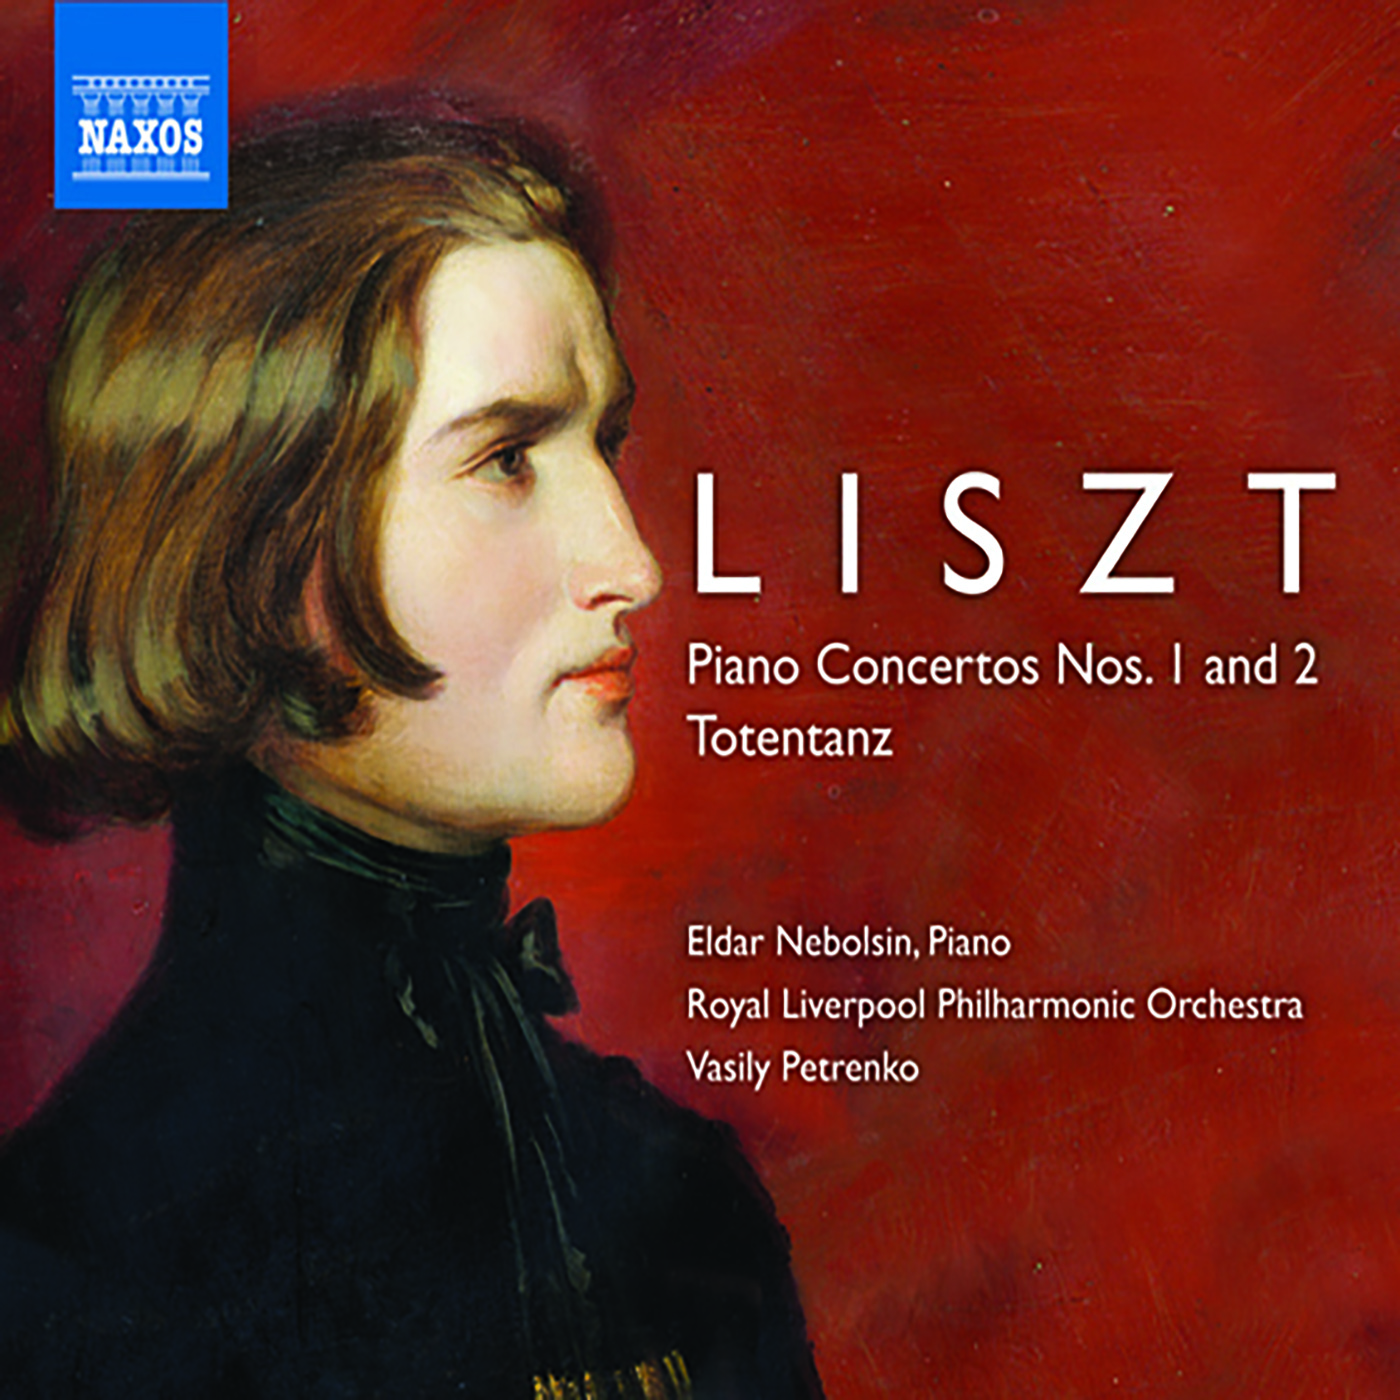 Piano Concerto No. 1 in E-Flat Major, S124/R455: Allegretto vivace - Piano Concerto No. 1 in E-Flat Major, S124/R455